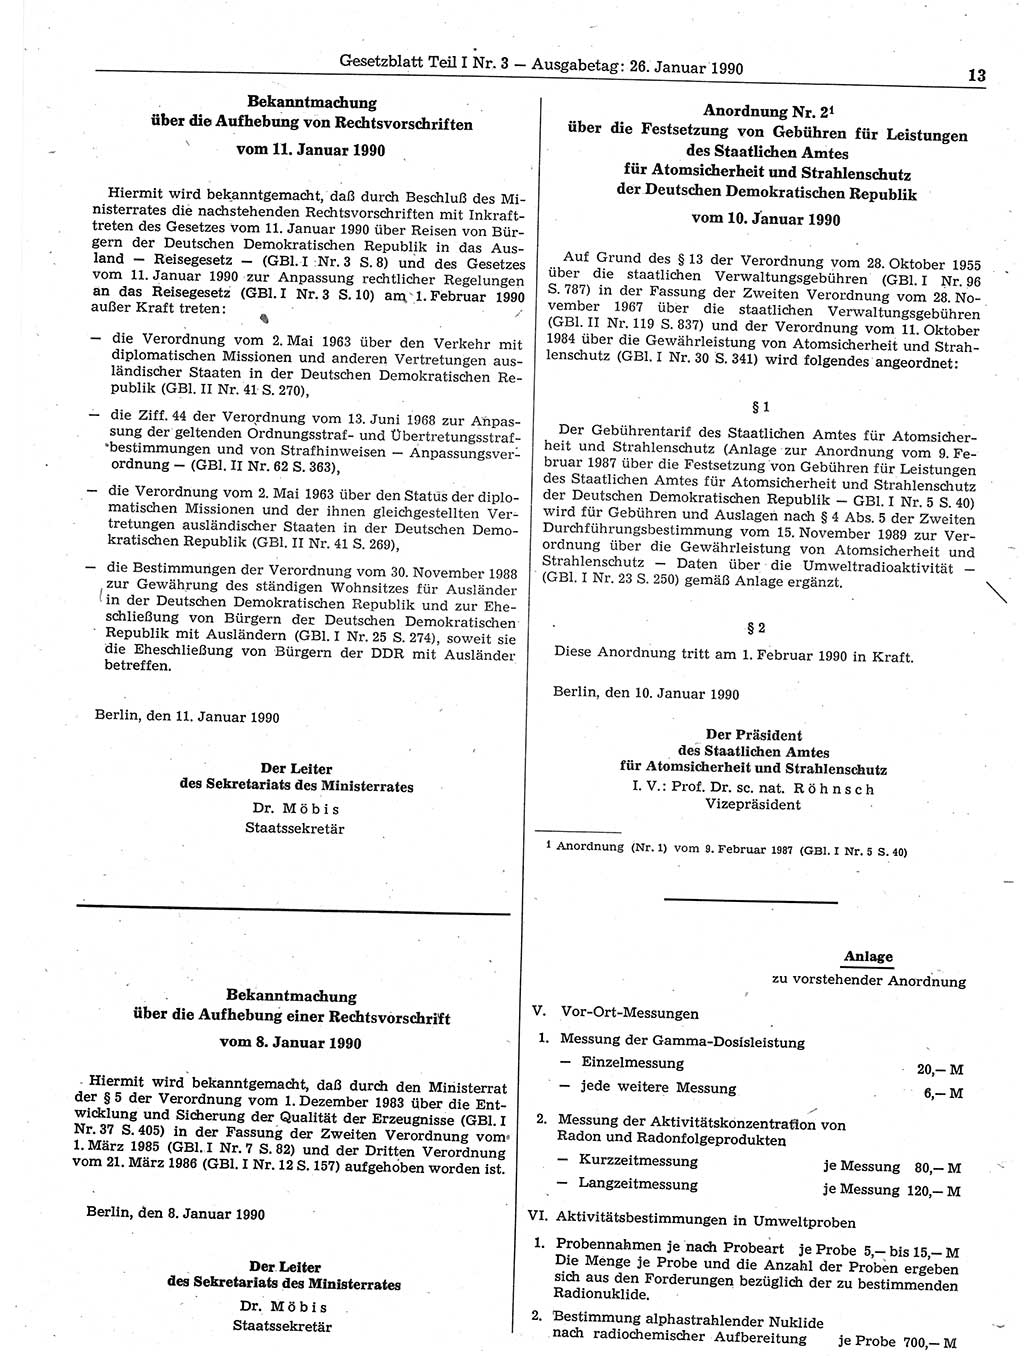 Gesetzblatt (GBl.) der Deutschen Demokratischen Republik (DDR) Teil Ⅰ 1990, Seite 13 (GBl. DDR Ⅰ 1990, S. 13)